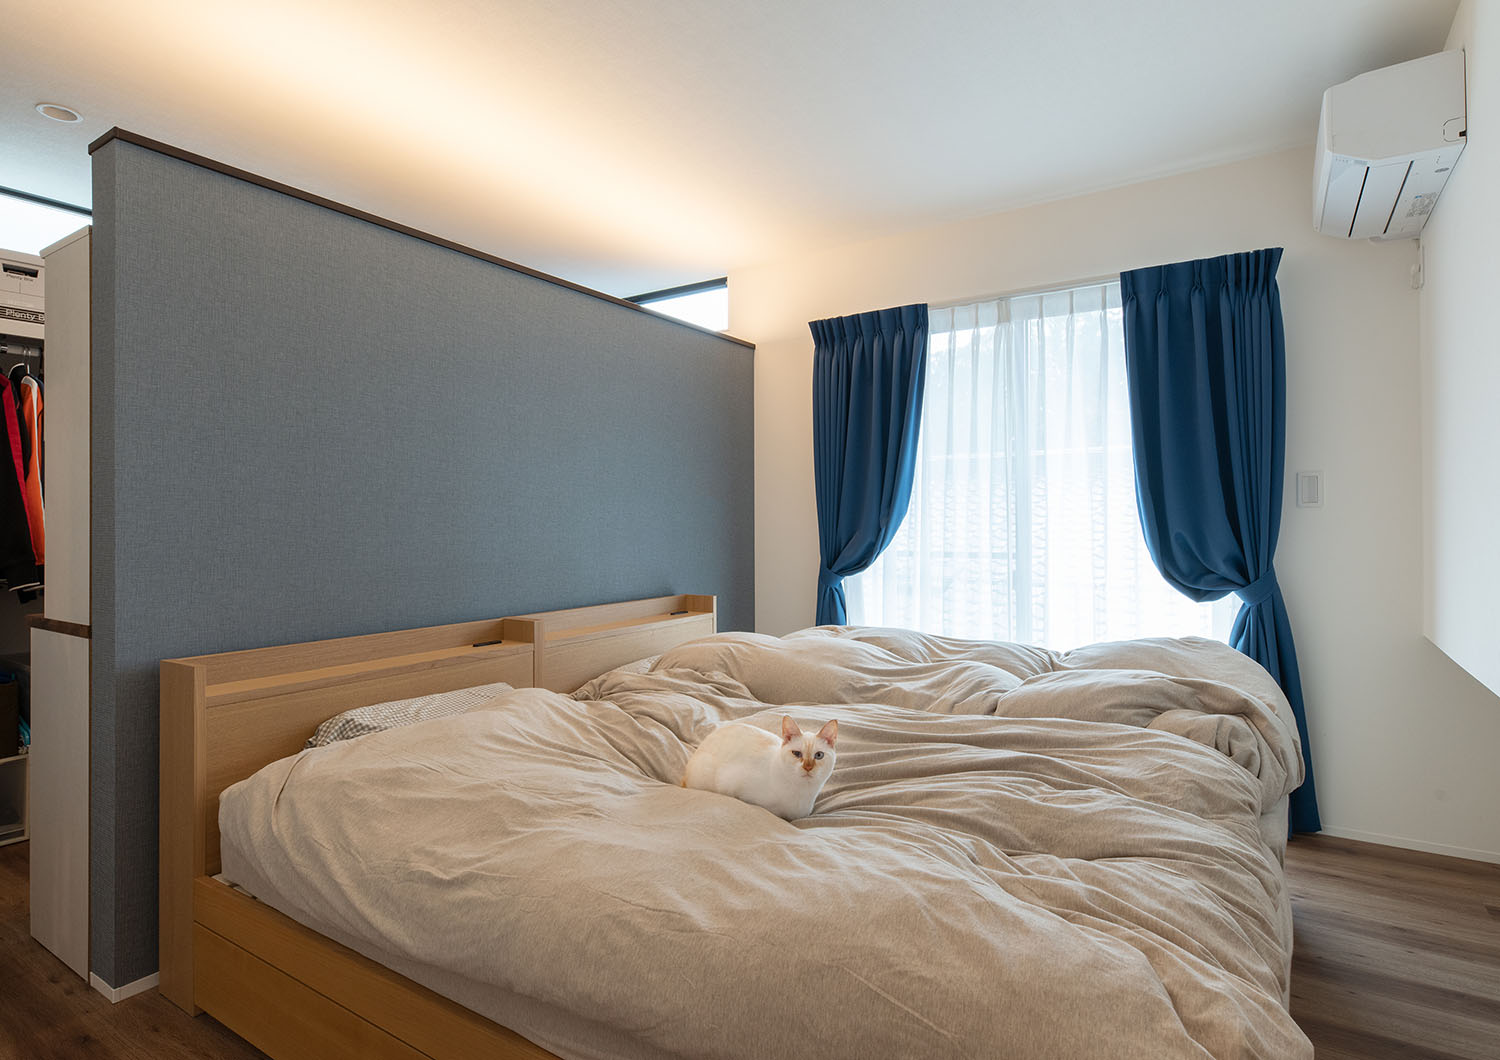 ベッドの他に青いカーテンや青い壁が設けられている寝室・デザイン住宅